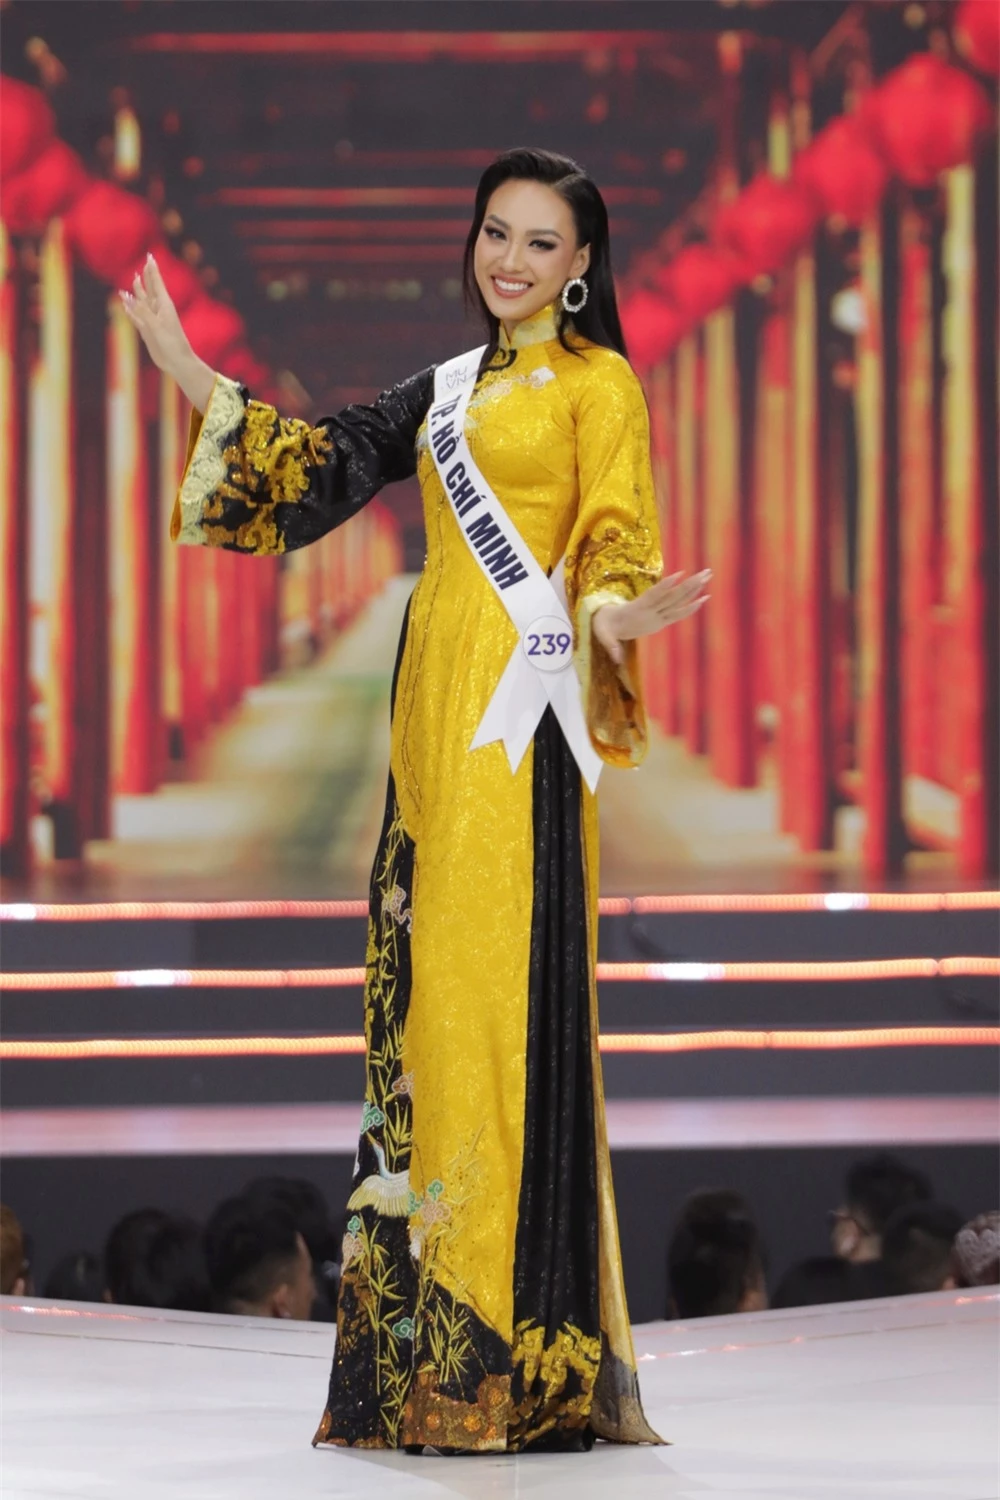 Bán kết Hoa hậu Hoàn vũ Việt Nam 2022: Loạt ứng viên cùng khoe vẻ nóng bỏng - Ảnh 3.